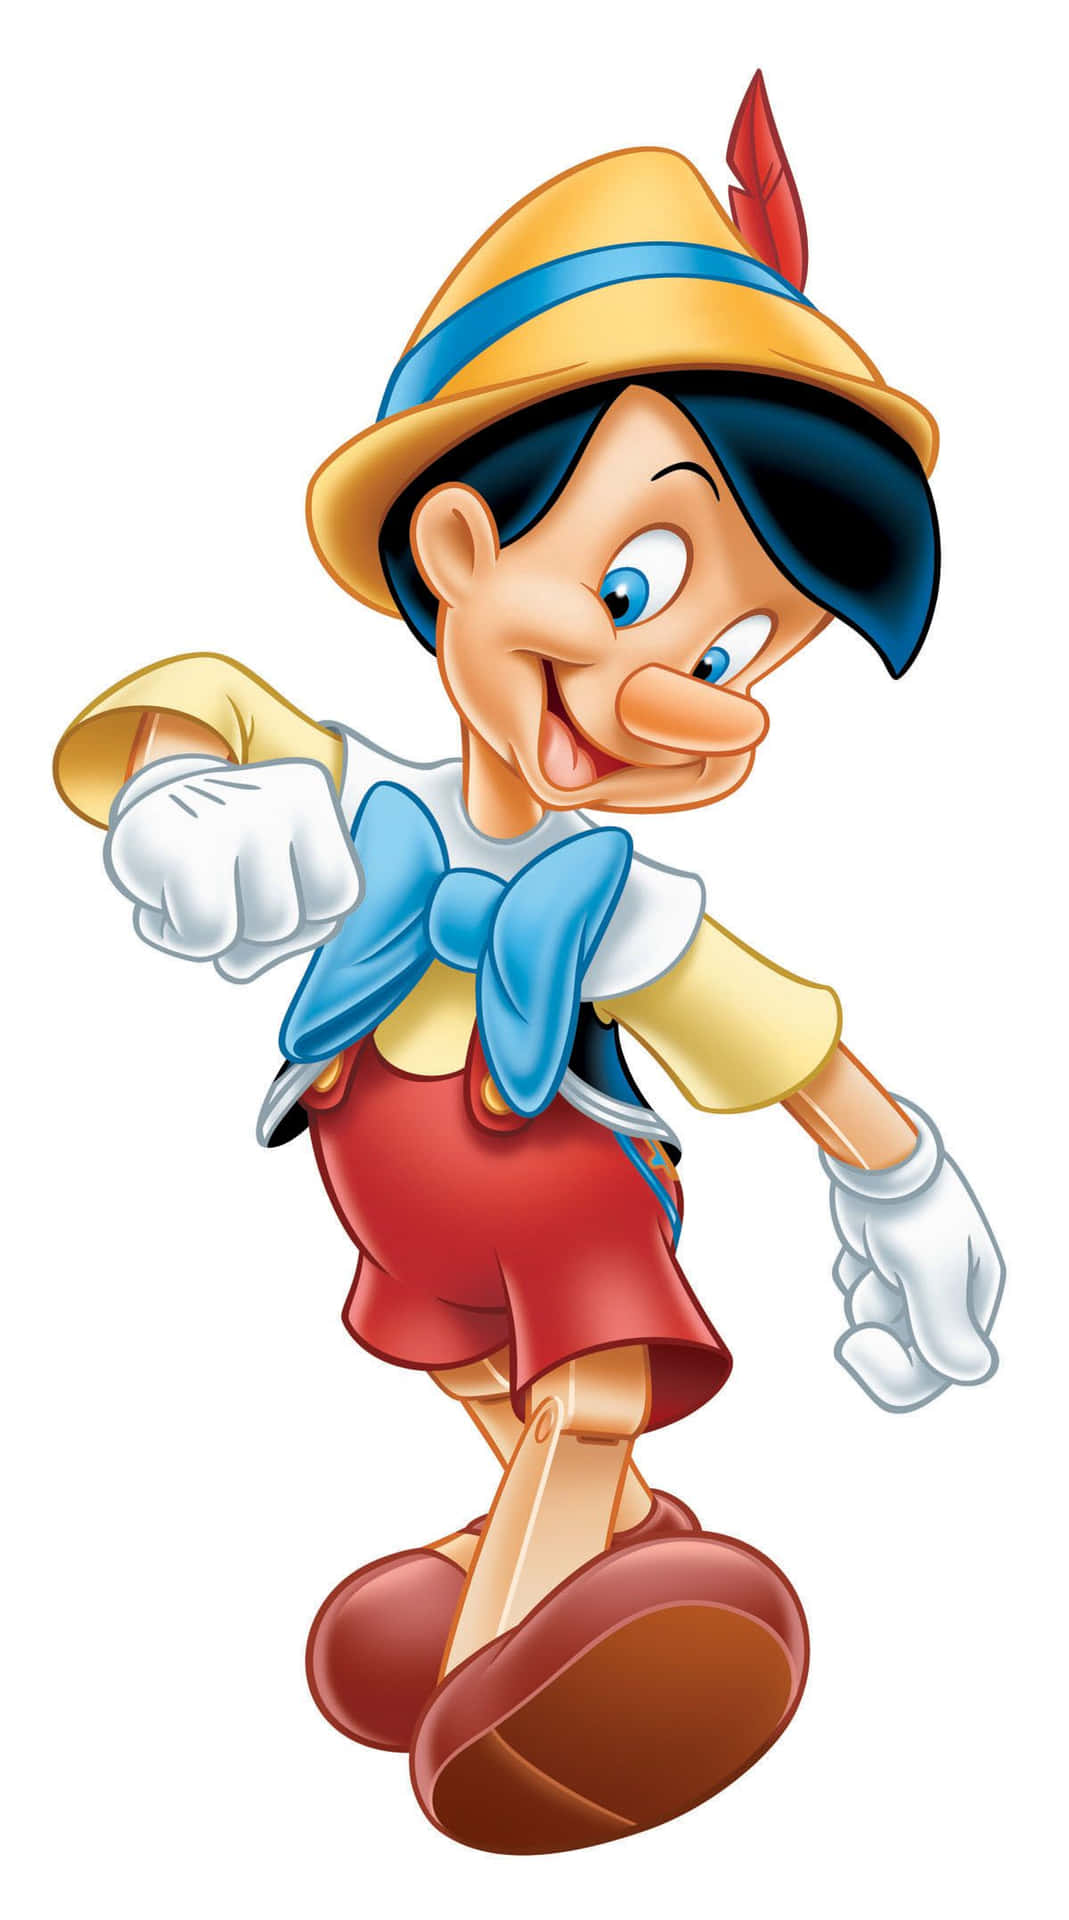 Imagende Pinocchio En Caricatura.